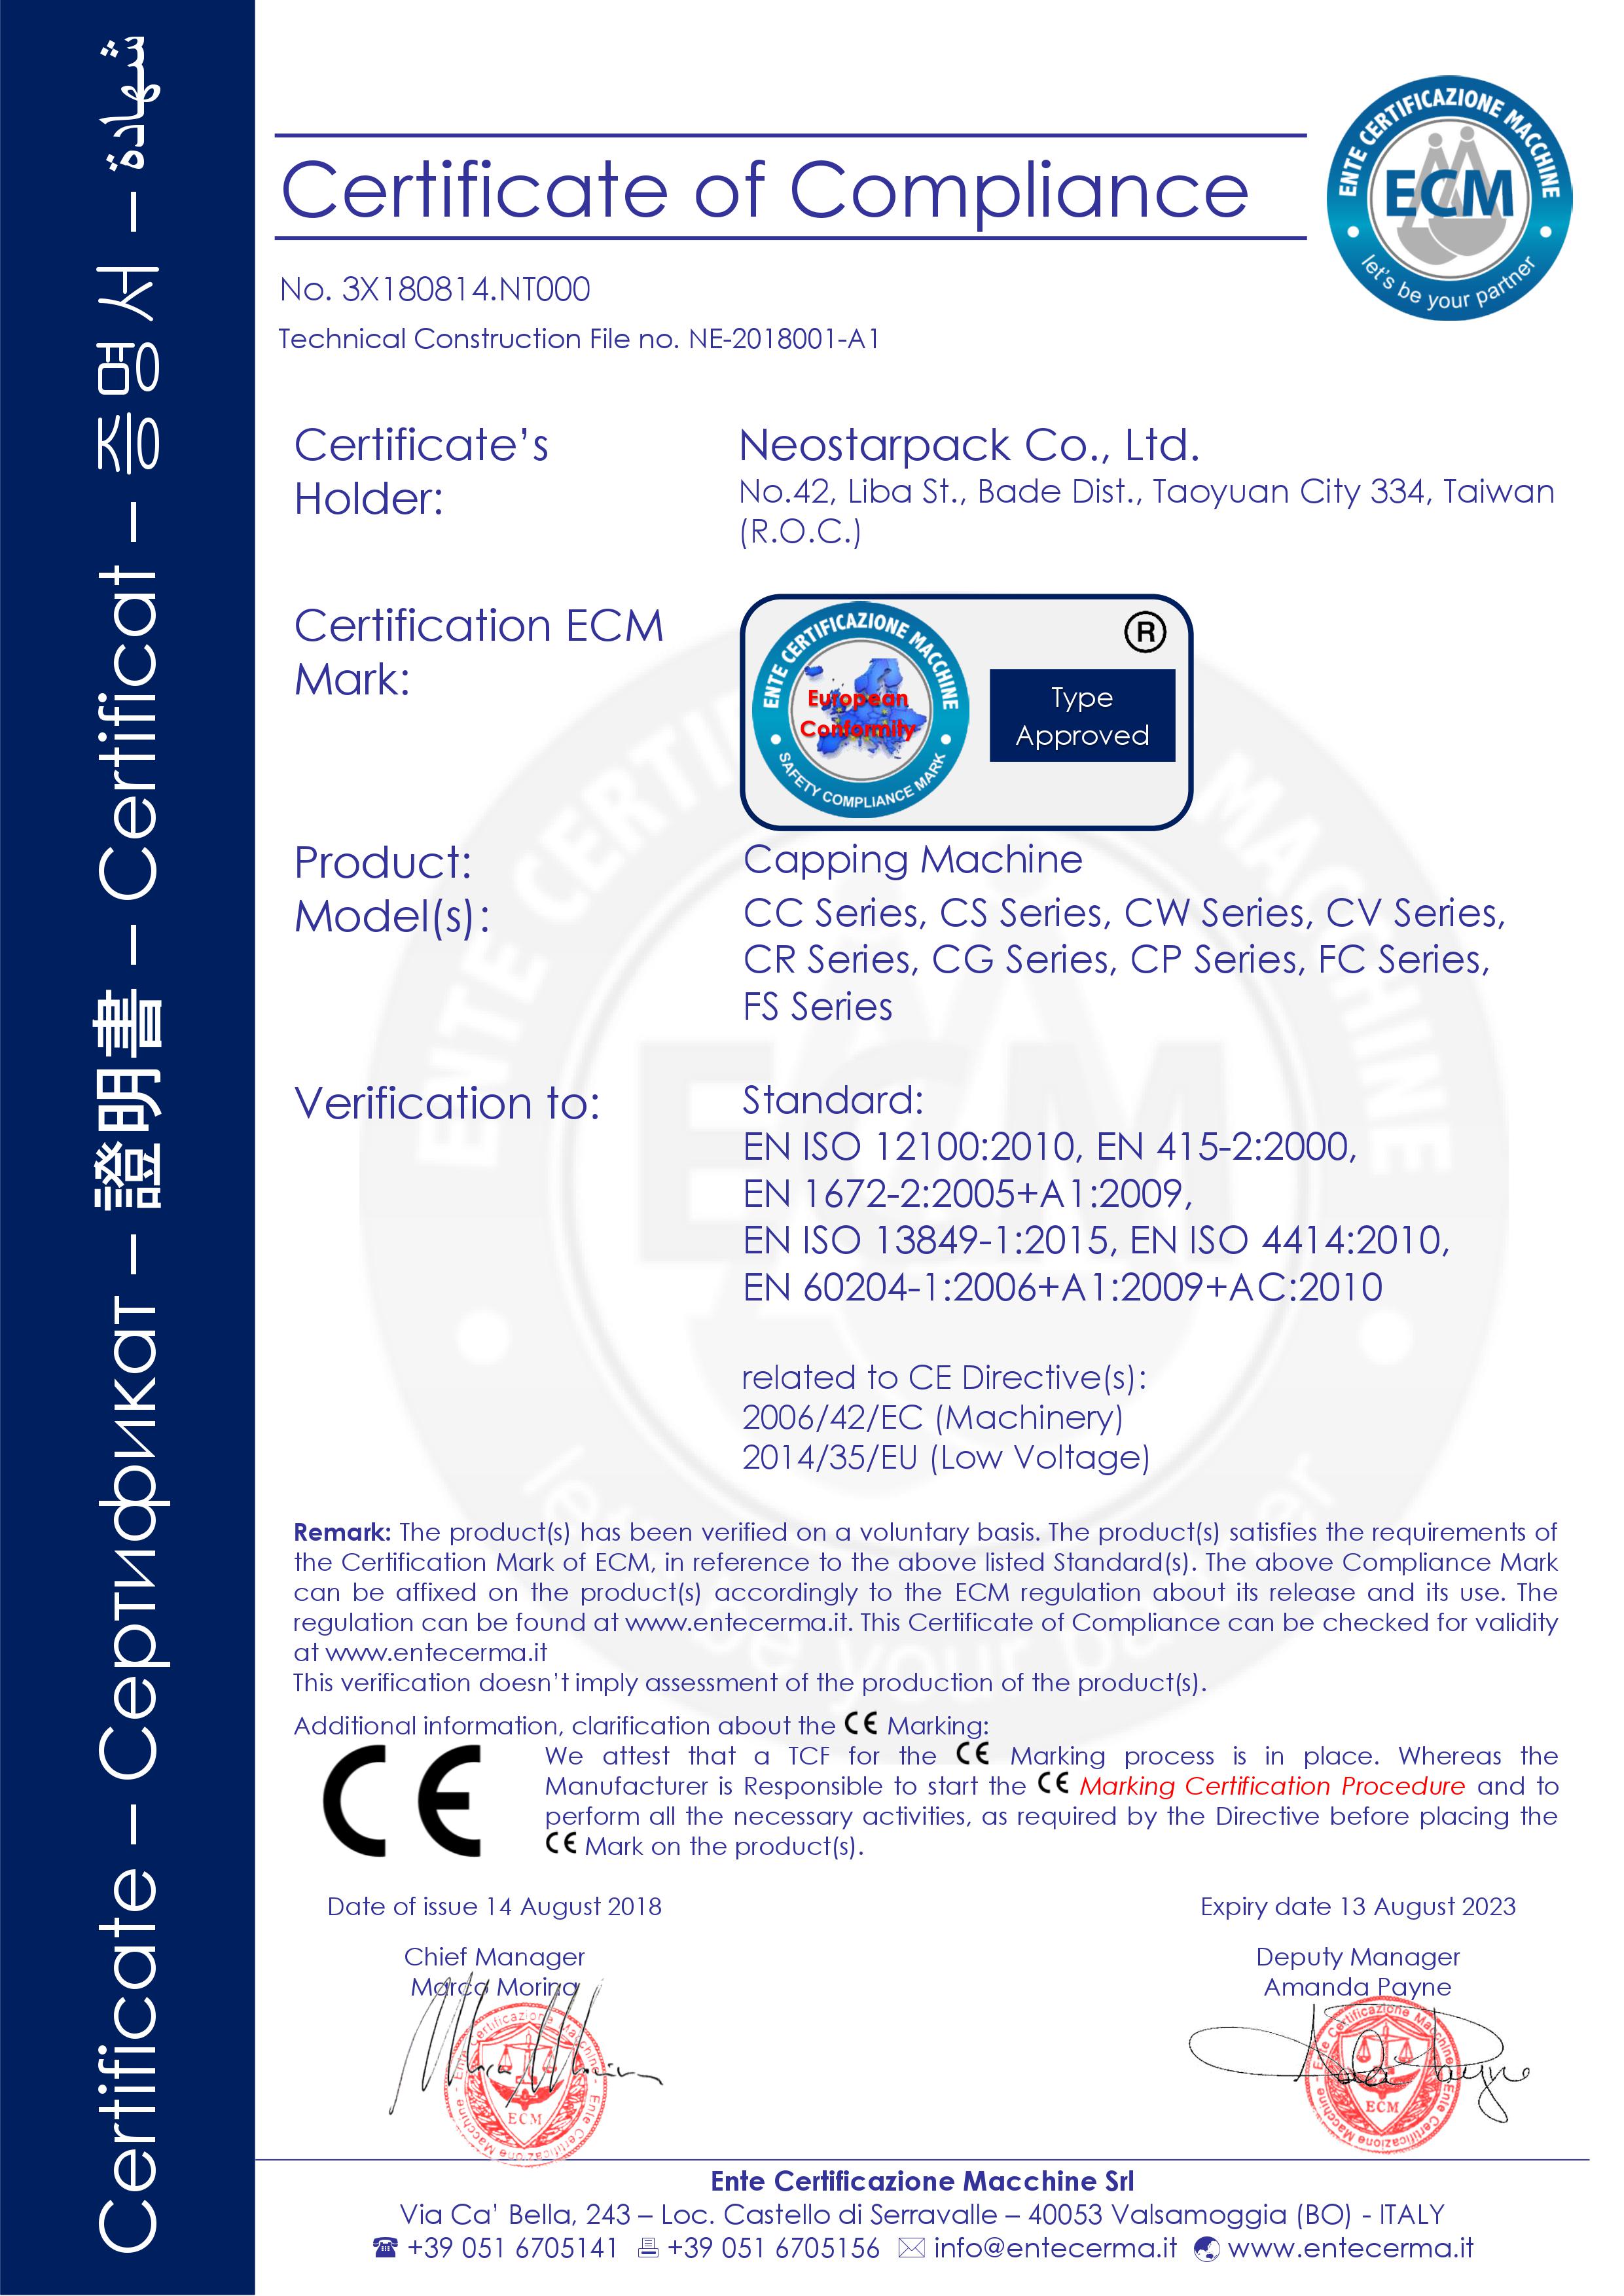 Máy đóng nắp Neostarpack được chứng nhận CE